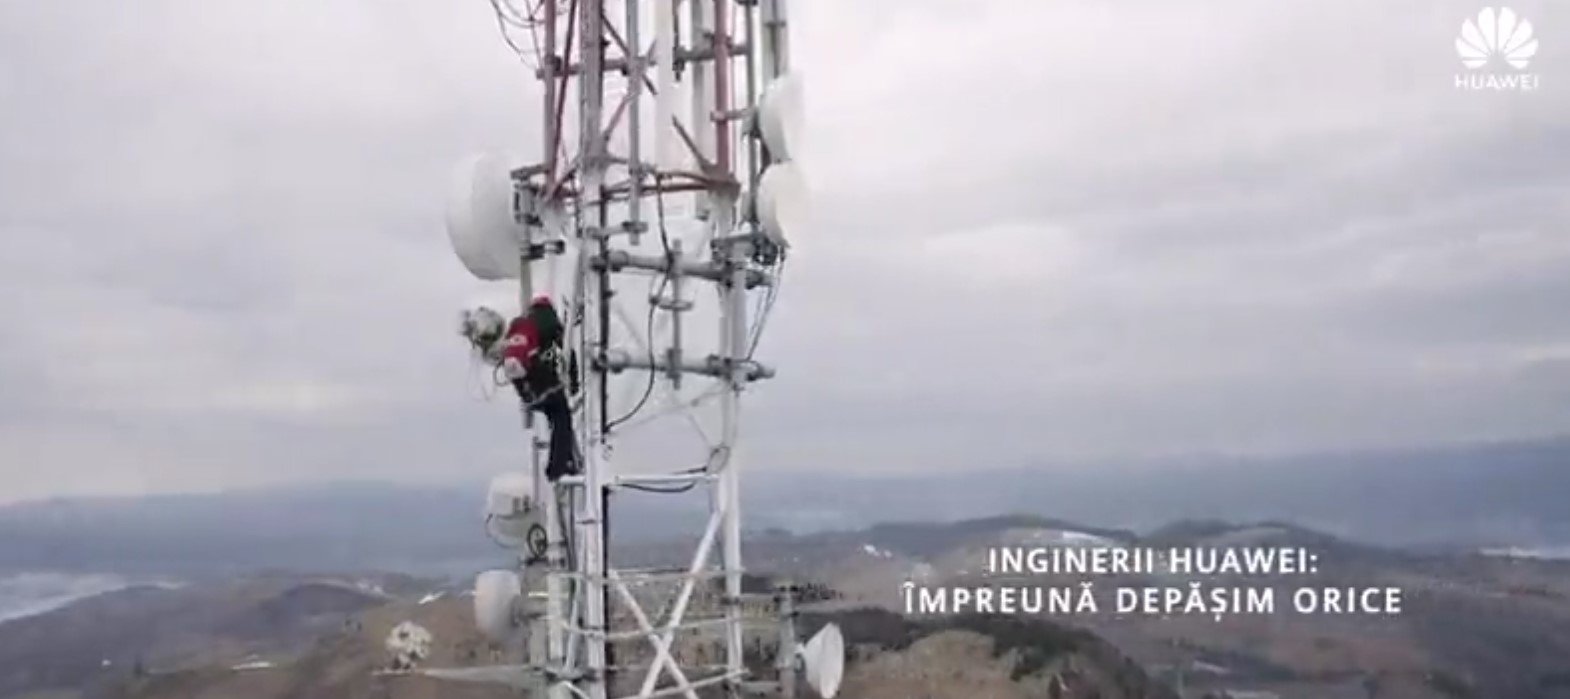 VIDEO Centrul de inginerie Huawei de la Deva. Un documentar despre dificultățile cu care se confruntă inginerii aflați pe teren